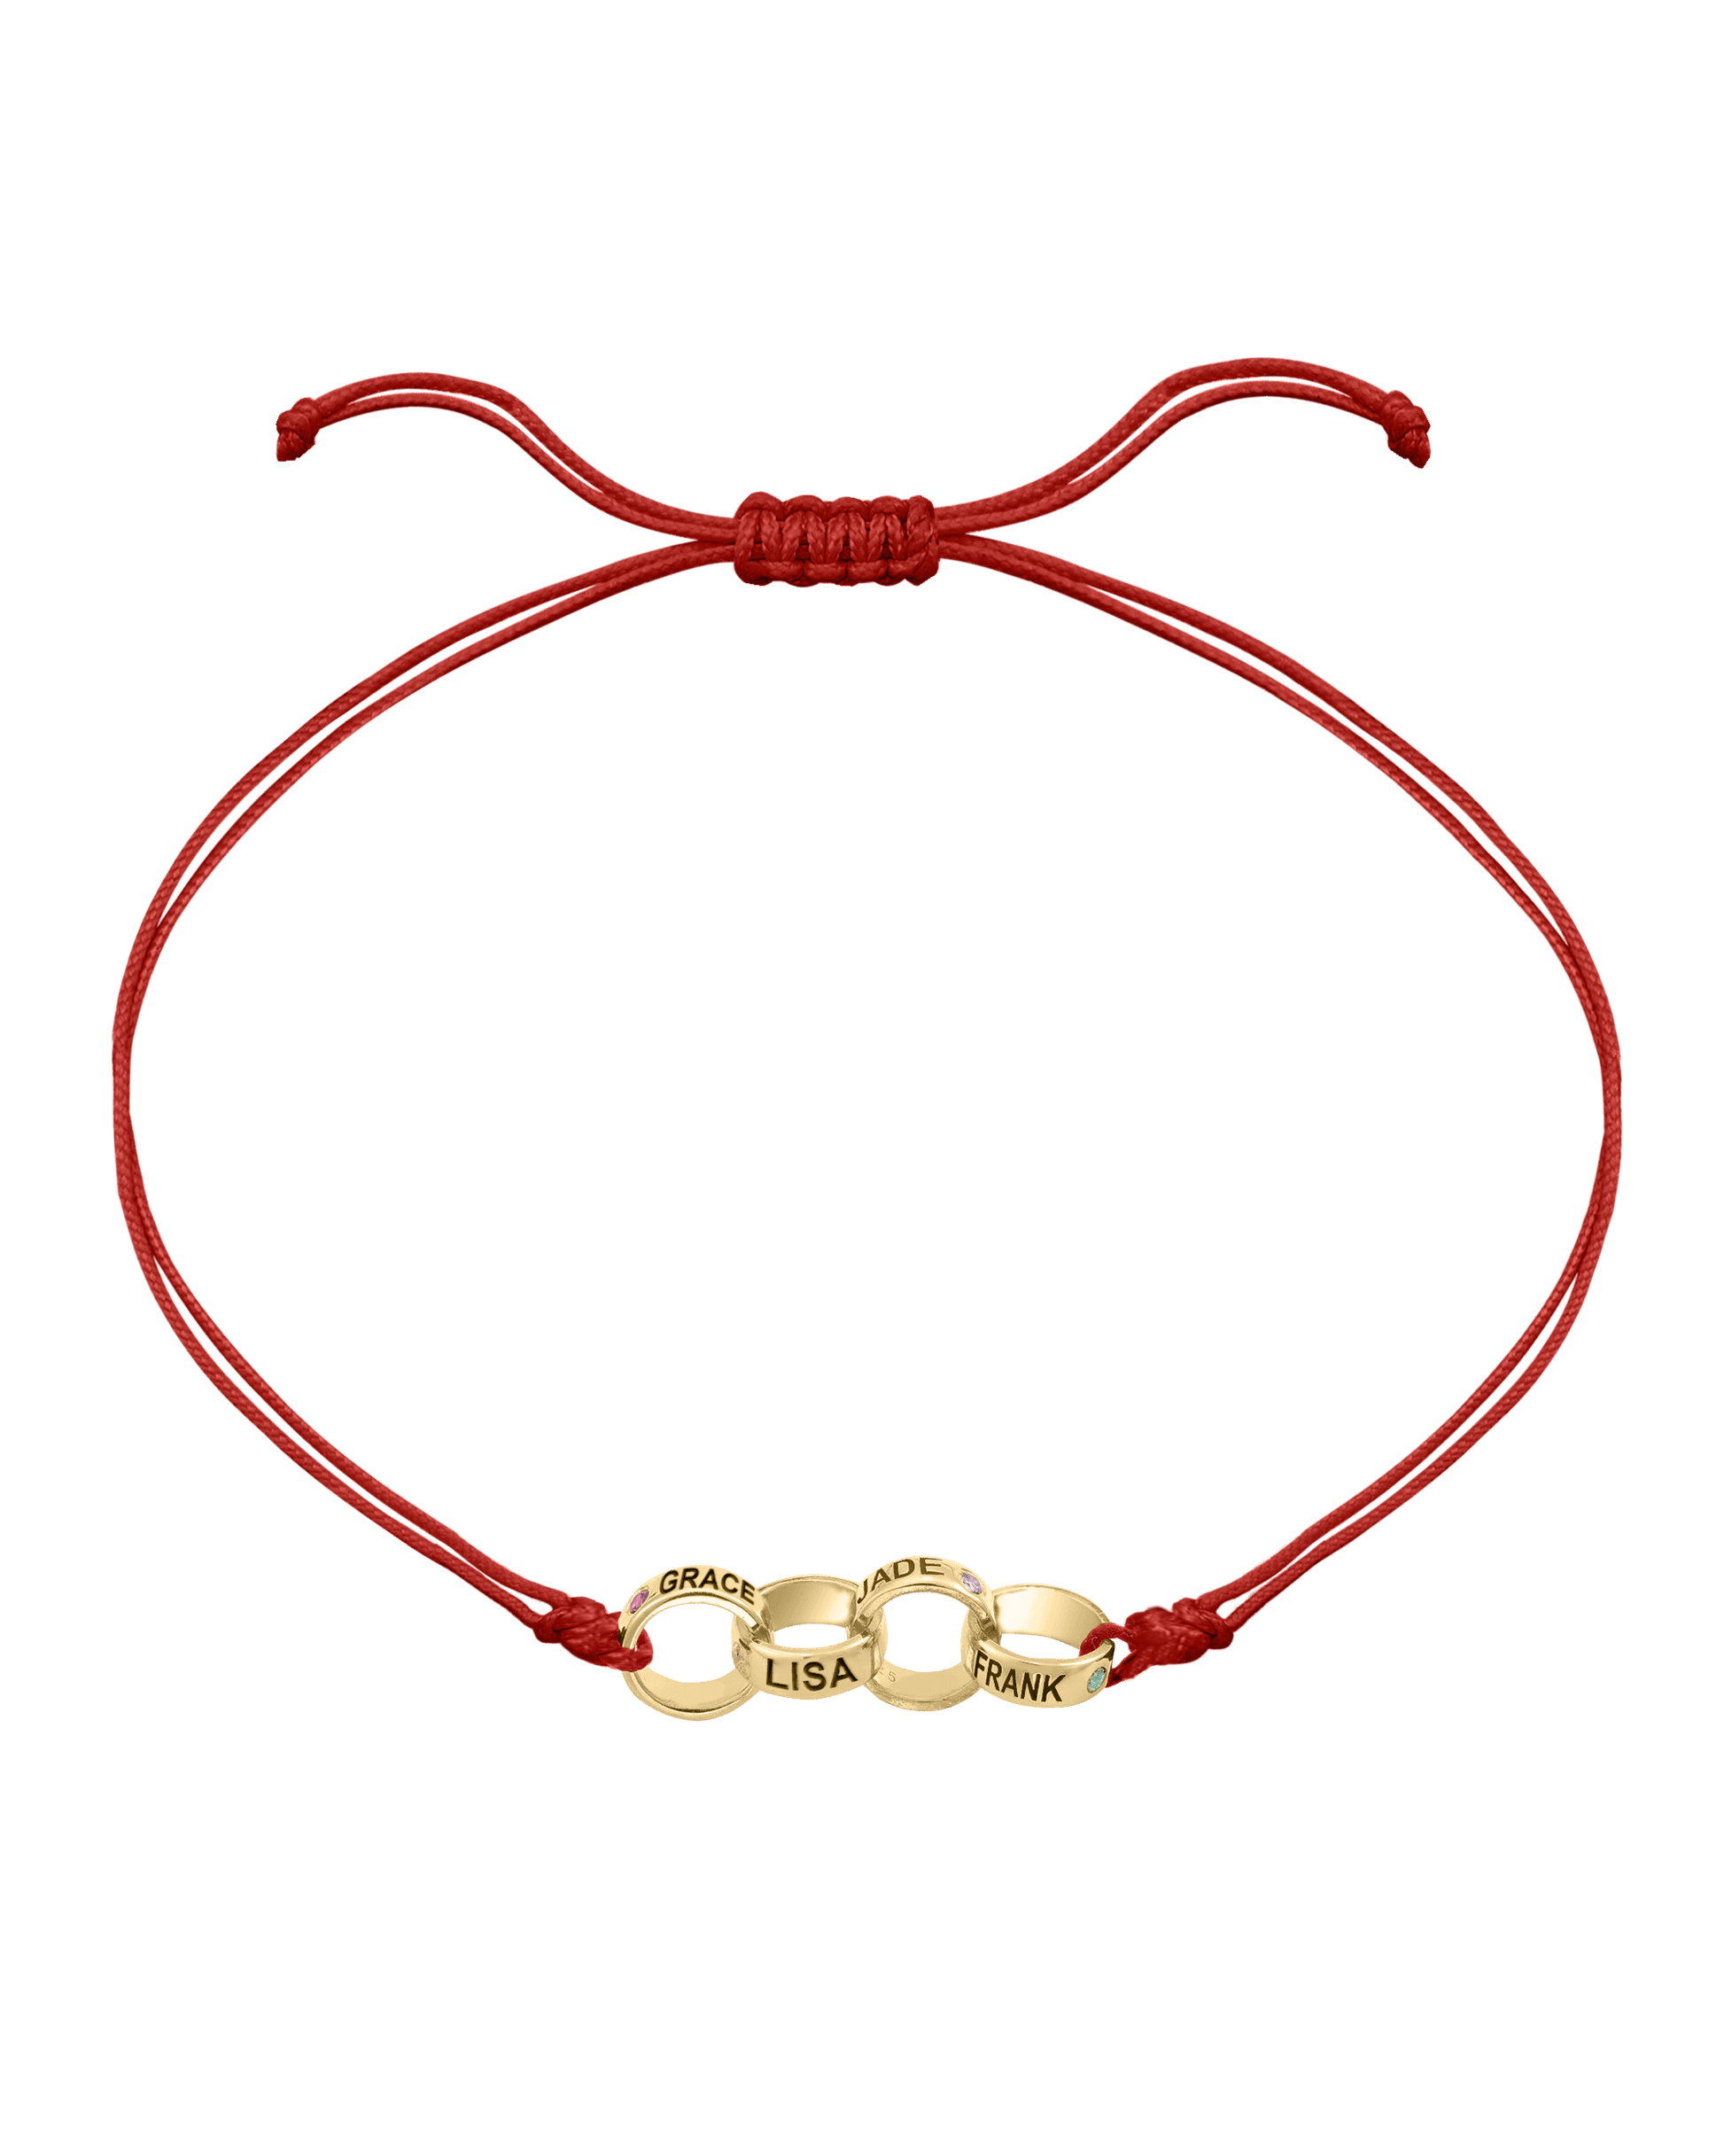 Engravable Links of Love - 18K Gold Vermeil Bracelets magal-dev 4 Red 